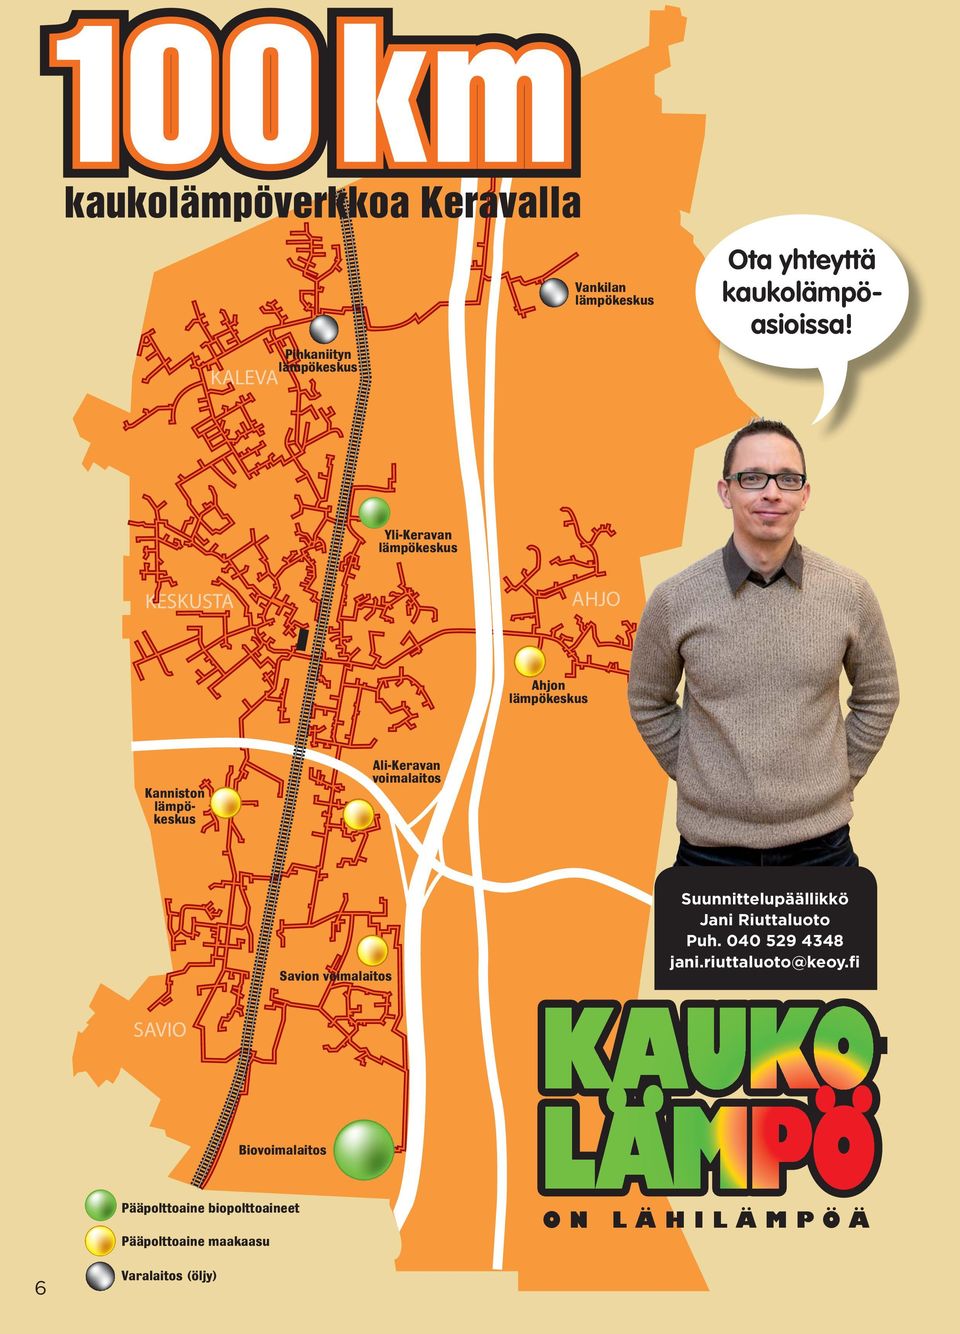 voimalaitos Savion voimalaitos Suunnittelupäällikkö Jani Riuttaluoto Puh. 040 529 4348 jani.